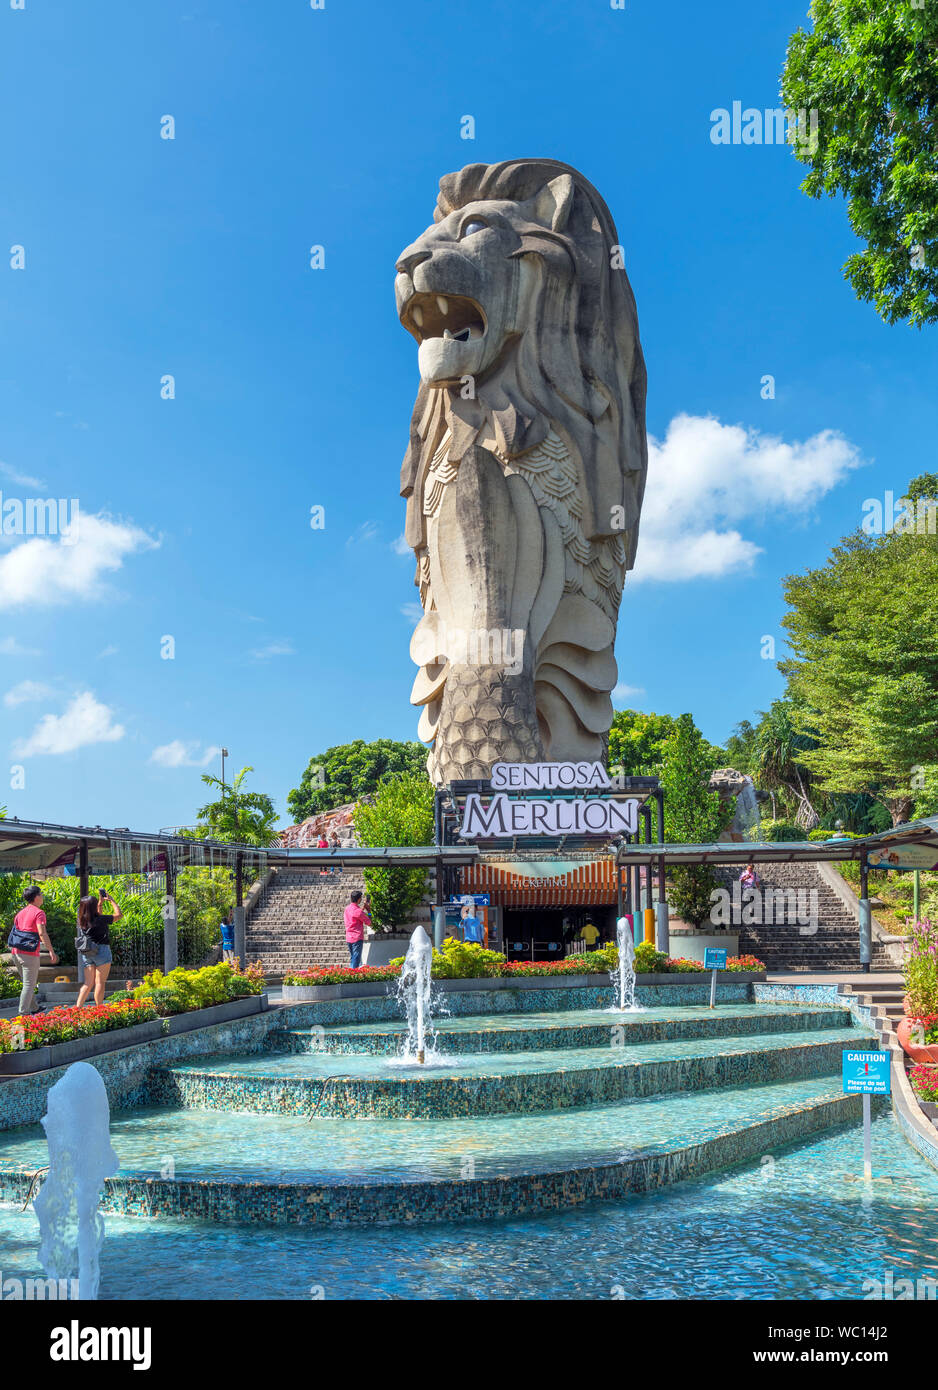 La estatua Merlion, el símbolo de Singapur, en la isla de Sentosa, Singapur Foto de stock